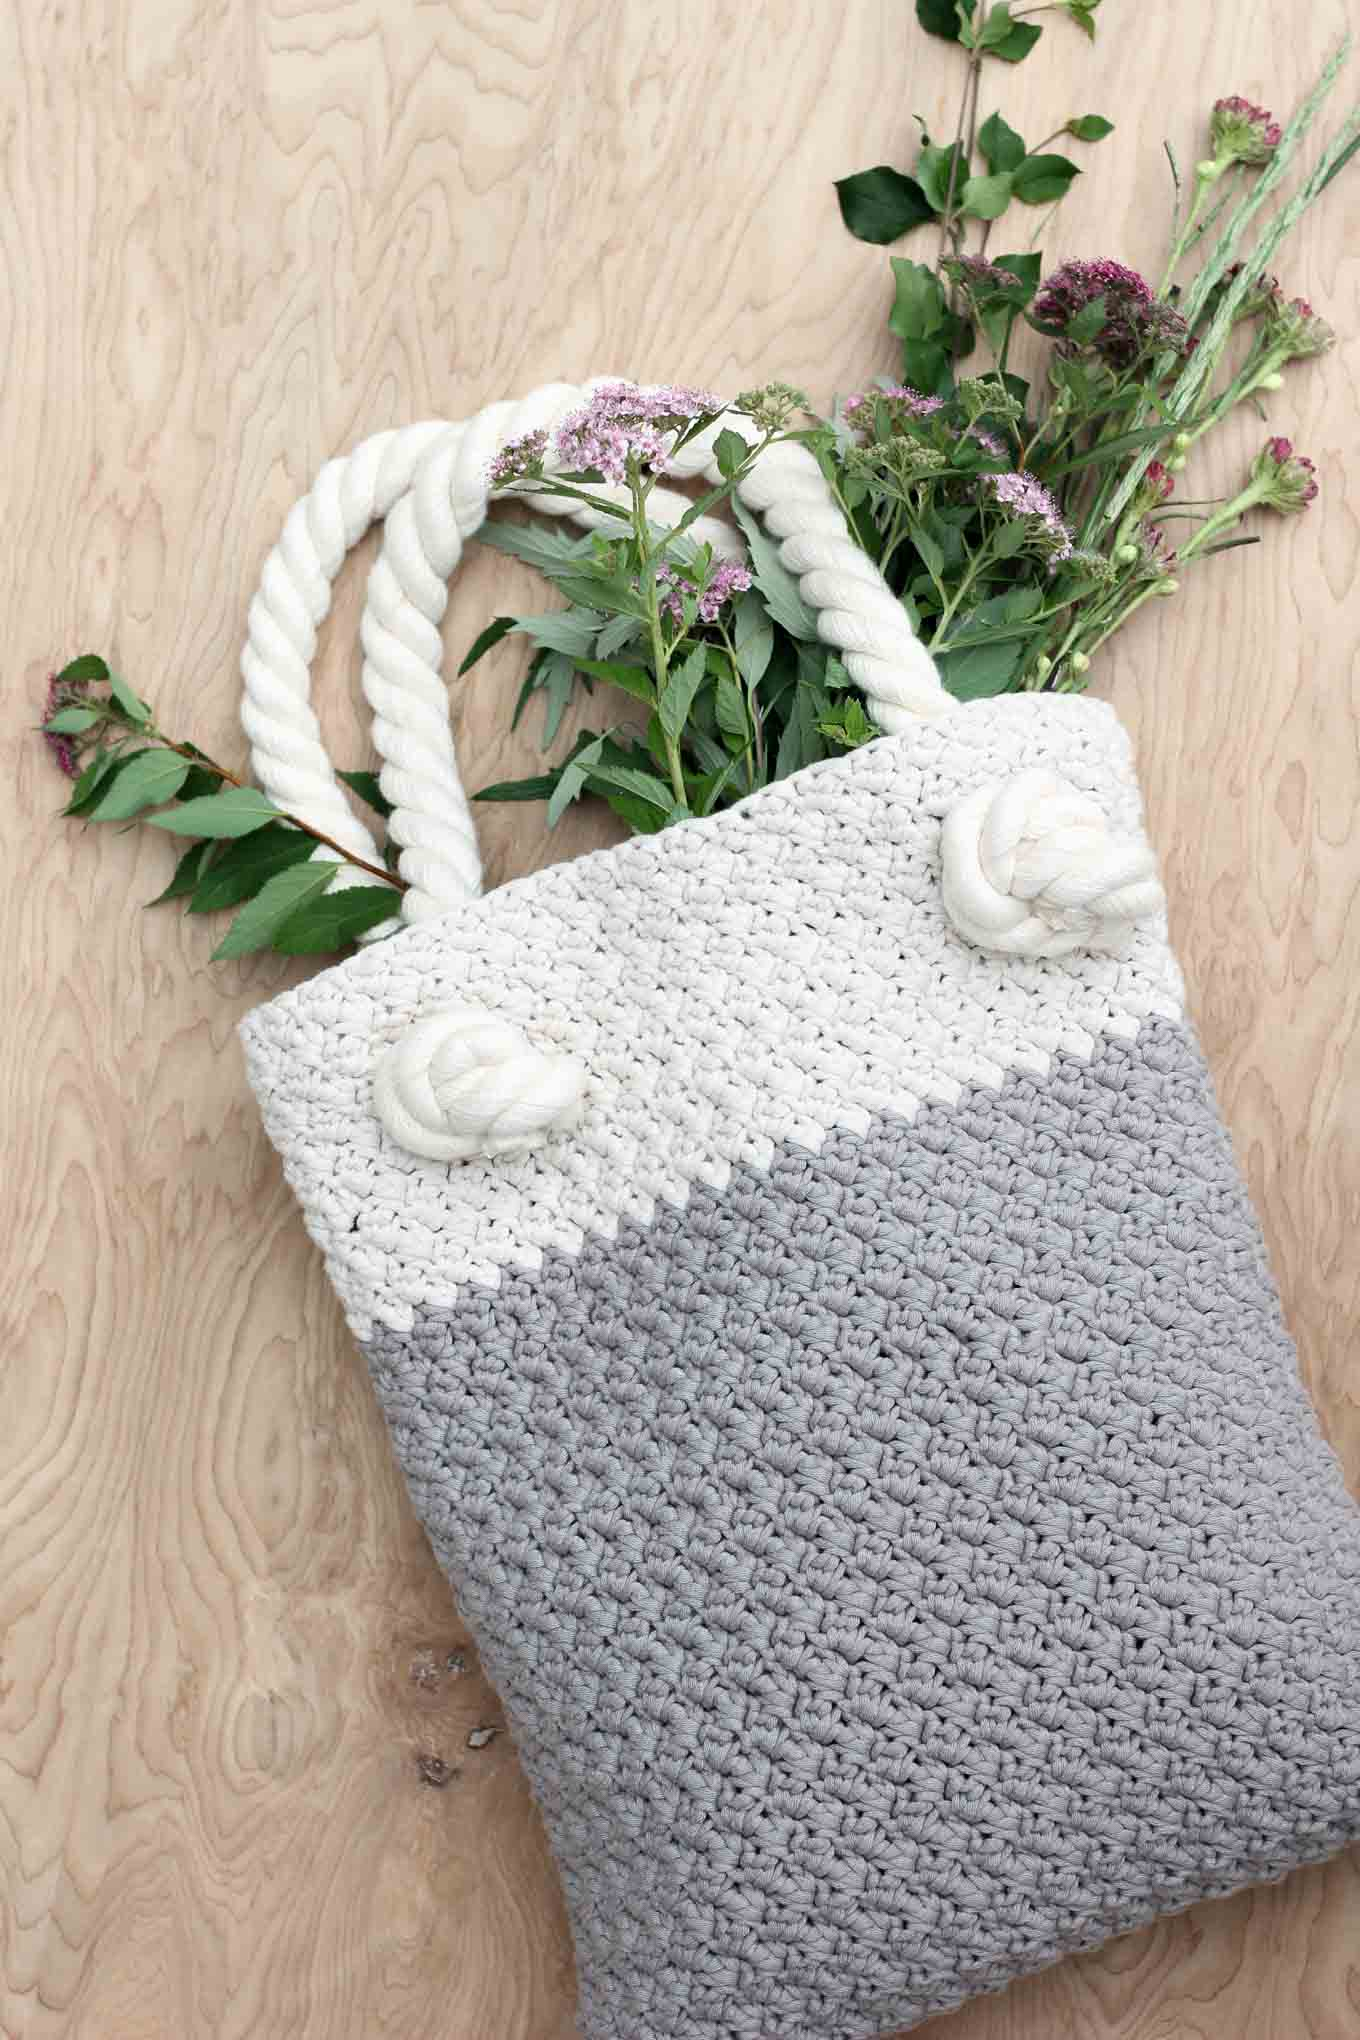 Crochet Hobo Bag Free Pattern Easy Modern Free Crochet Bag Pattern For Beginners